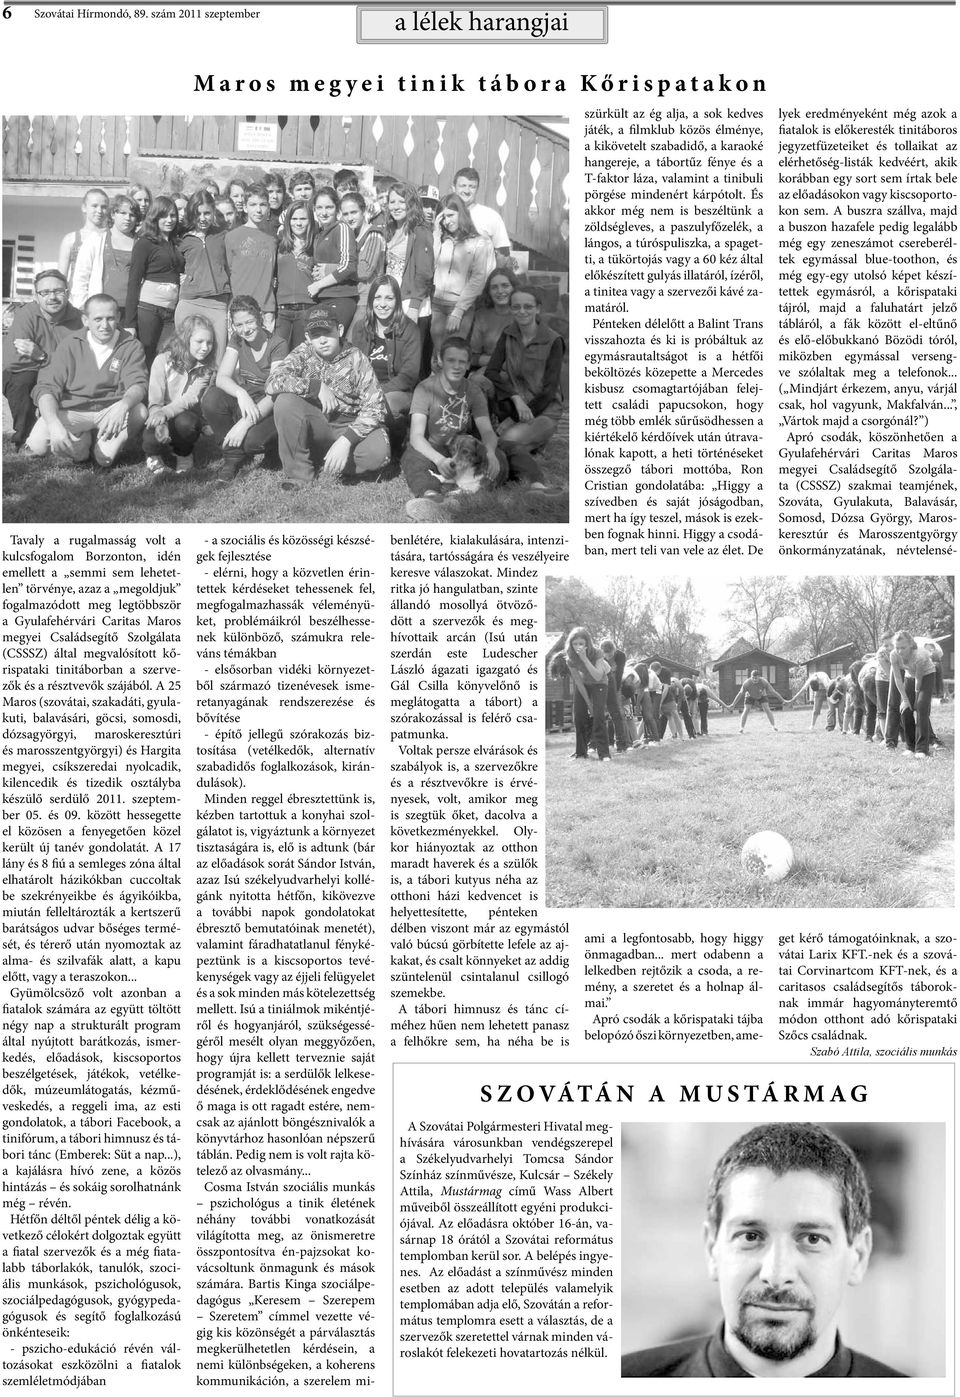 Gyulafehérvári Caritas Maros megyei Családsegítő Szolgálata (CSSSZ) által megvalósított kőrispataki tinitáborban a szervezők és a résztvevők szájából.